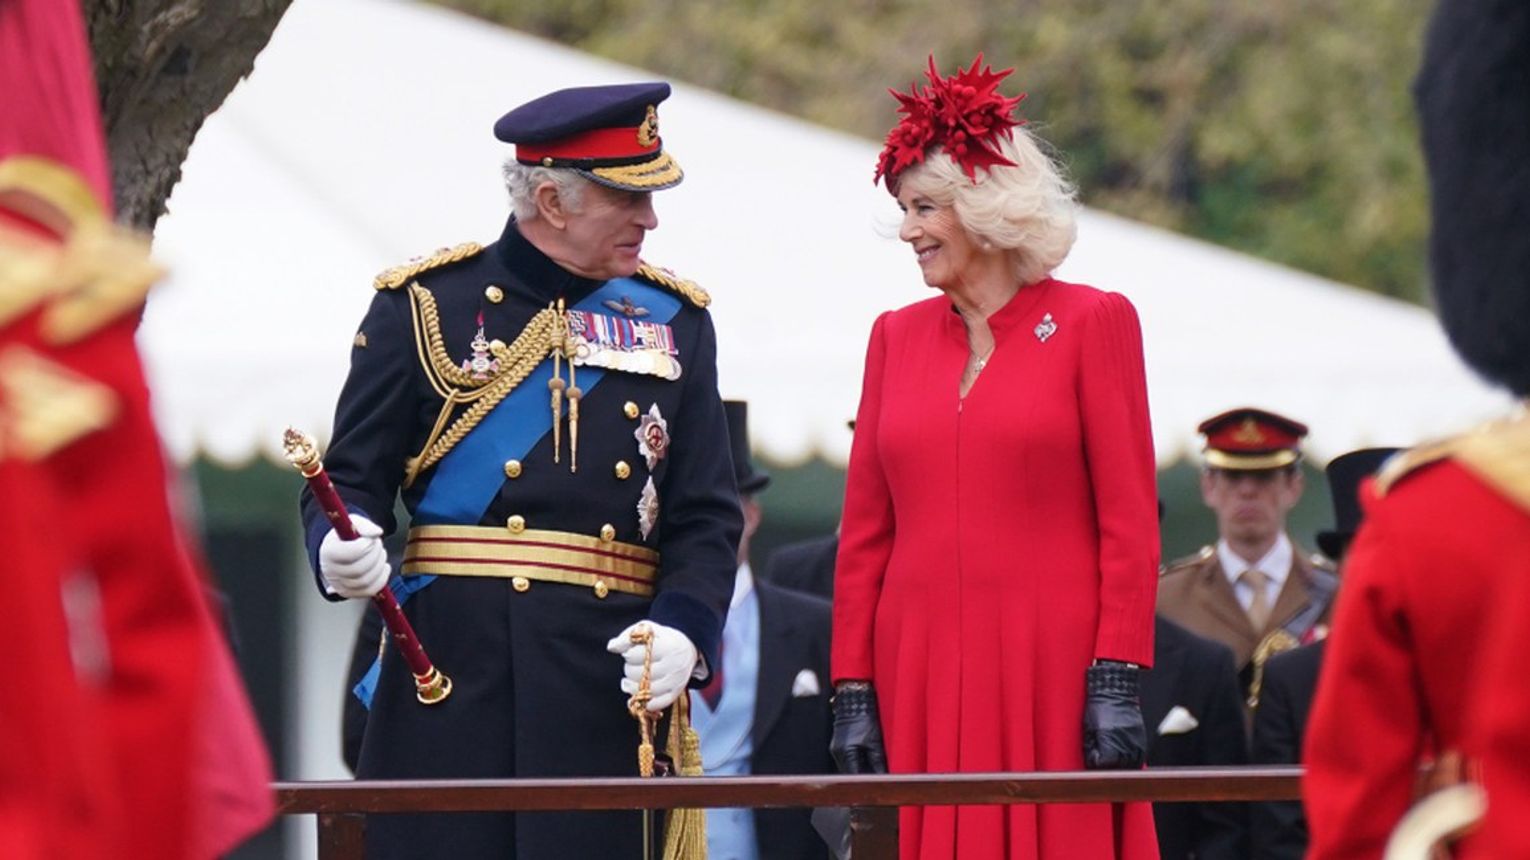 Koronacja Karola Iii Króla Wielkiej Brytanii Ceremonia Koszty Transmisja 